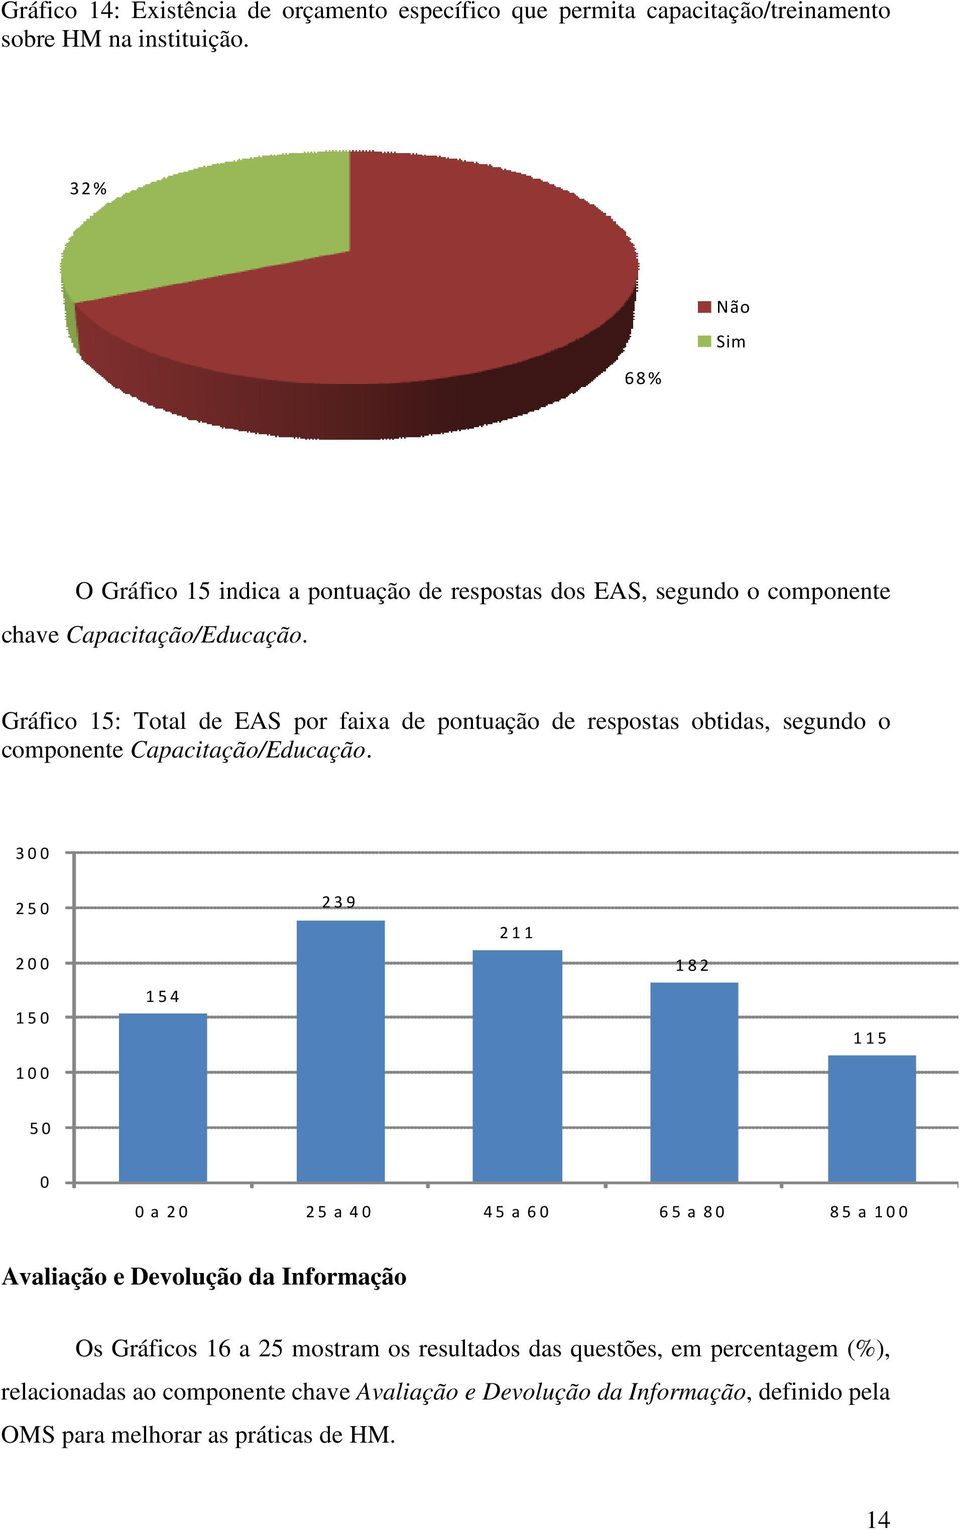 Gráfico 15: Total de EAS por faixa de pontuação de respostas obtidas, segundo o componente Capacitação/Educação.